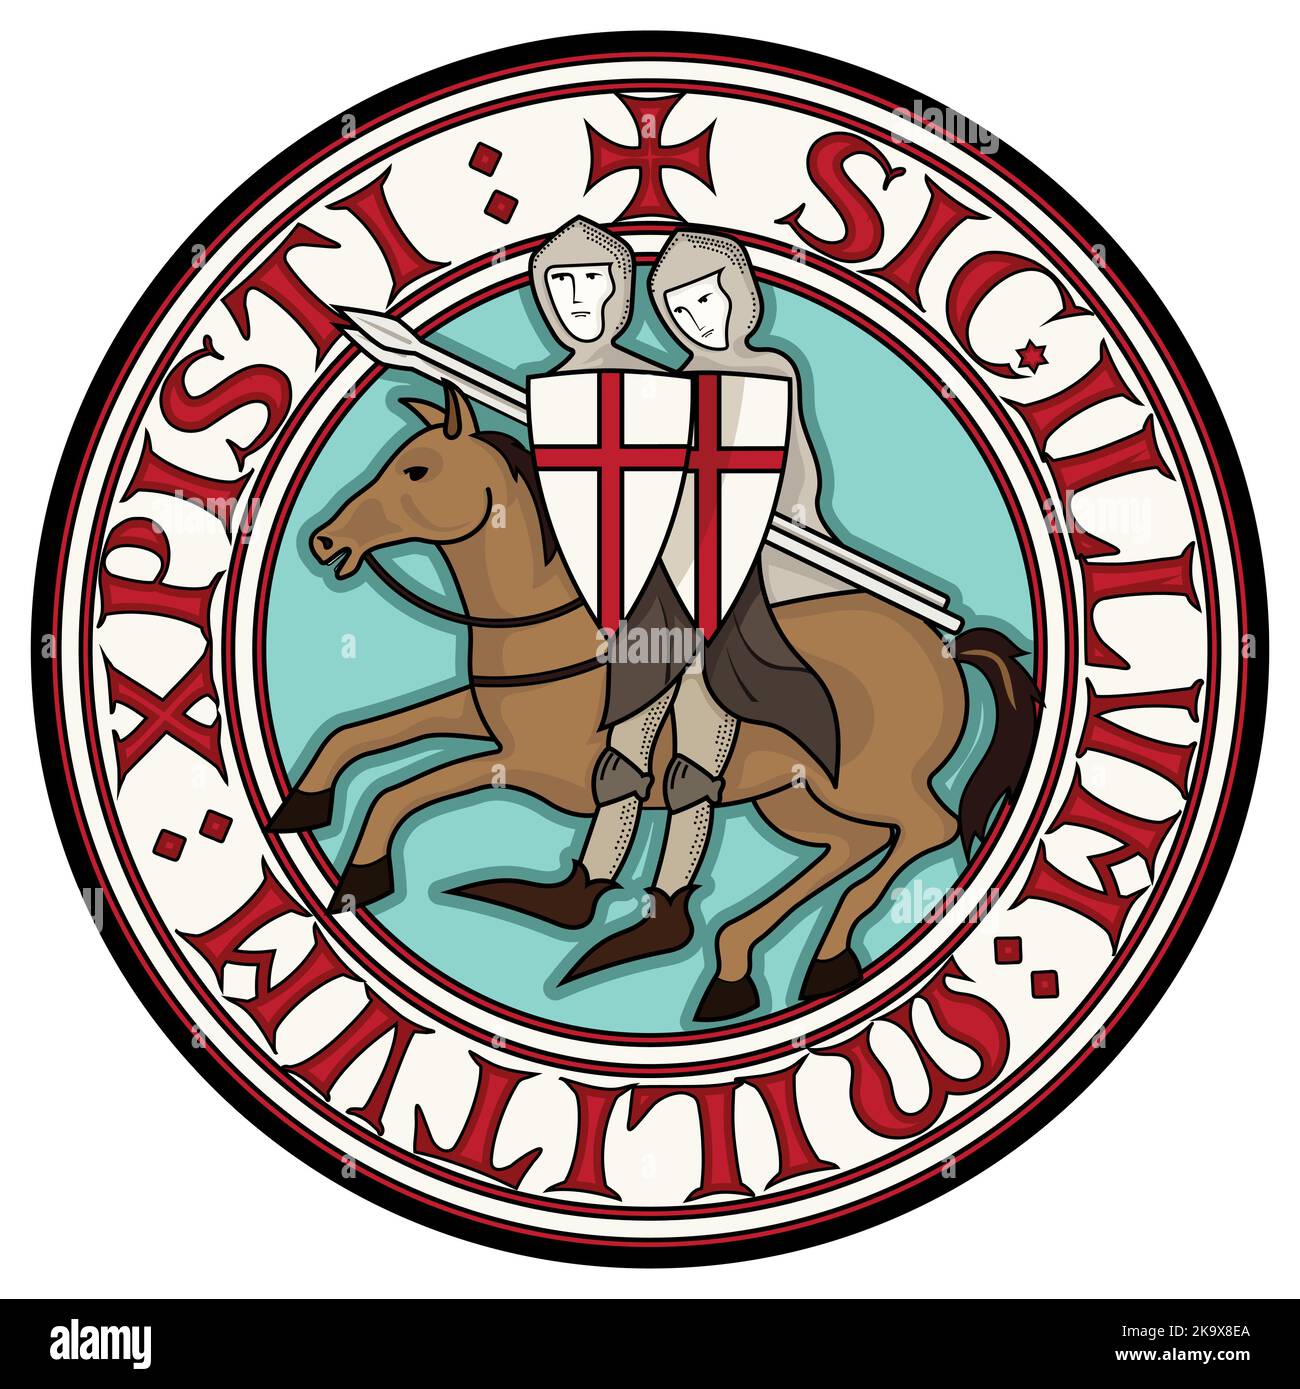 Segno dei Templari Cavaliere. Due cavalieri crociati a cavallo con lance, in cerchio dal testo dello slogan dei cavalieri Templari Illustrazione Vettoriale